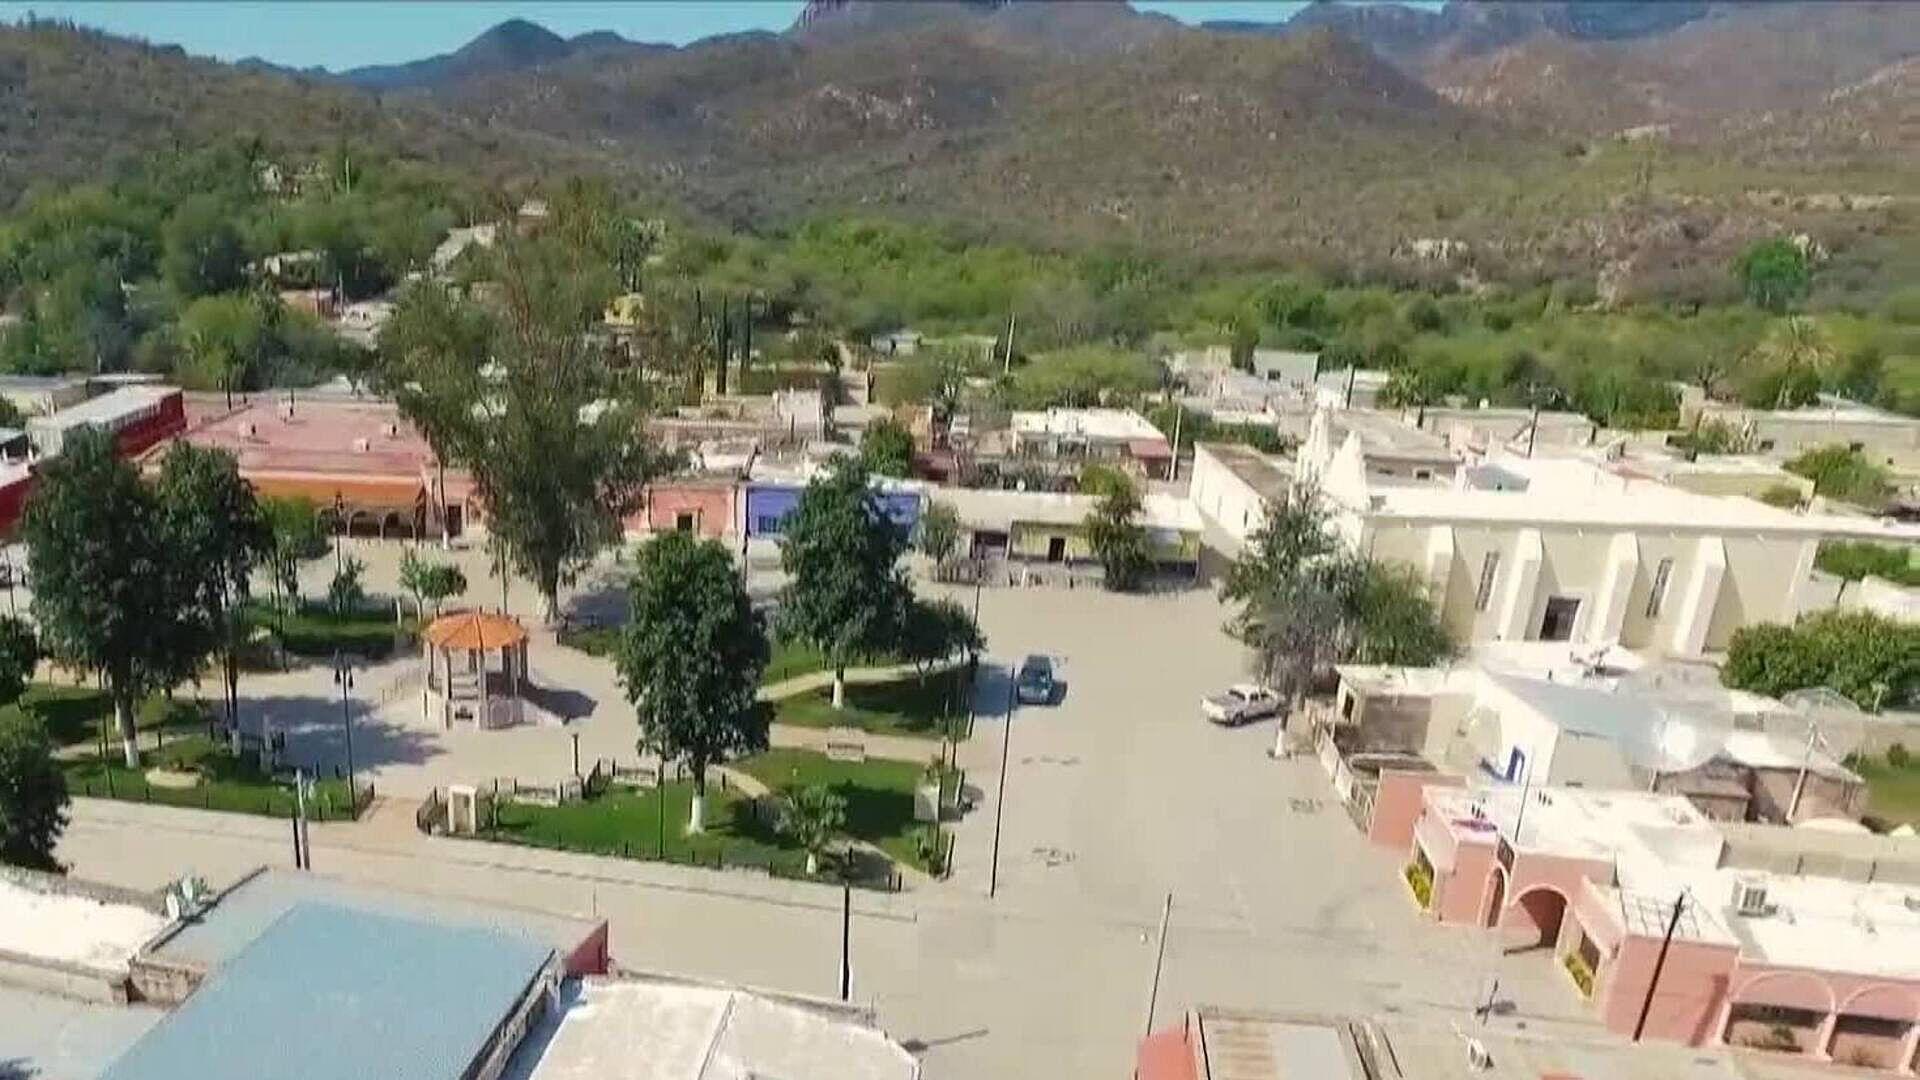 Capacitan a Prestadores de Servicio para Visita de Turistas a Hermosillo